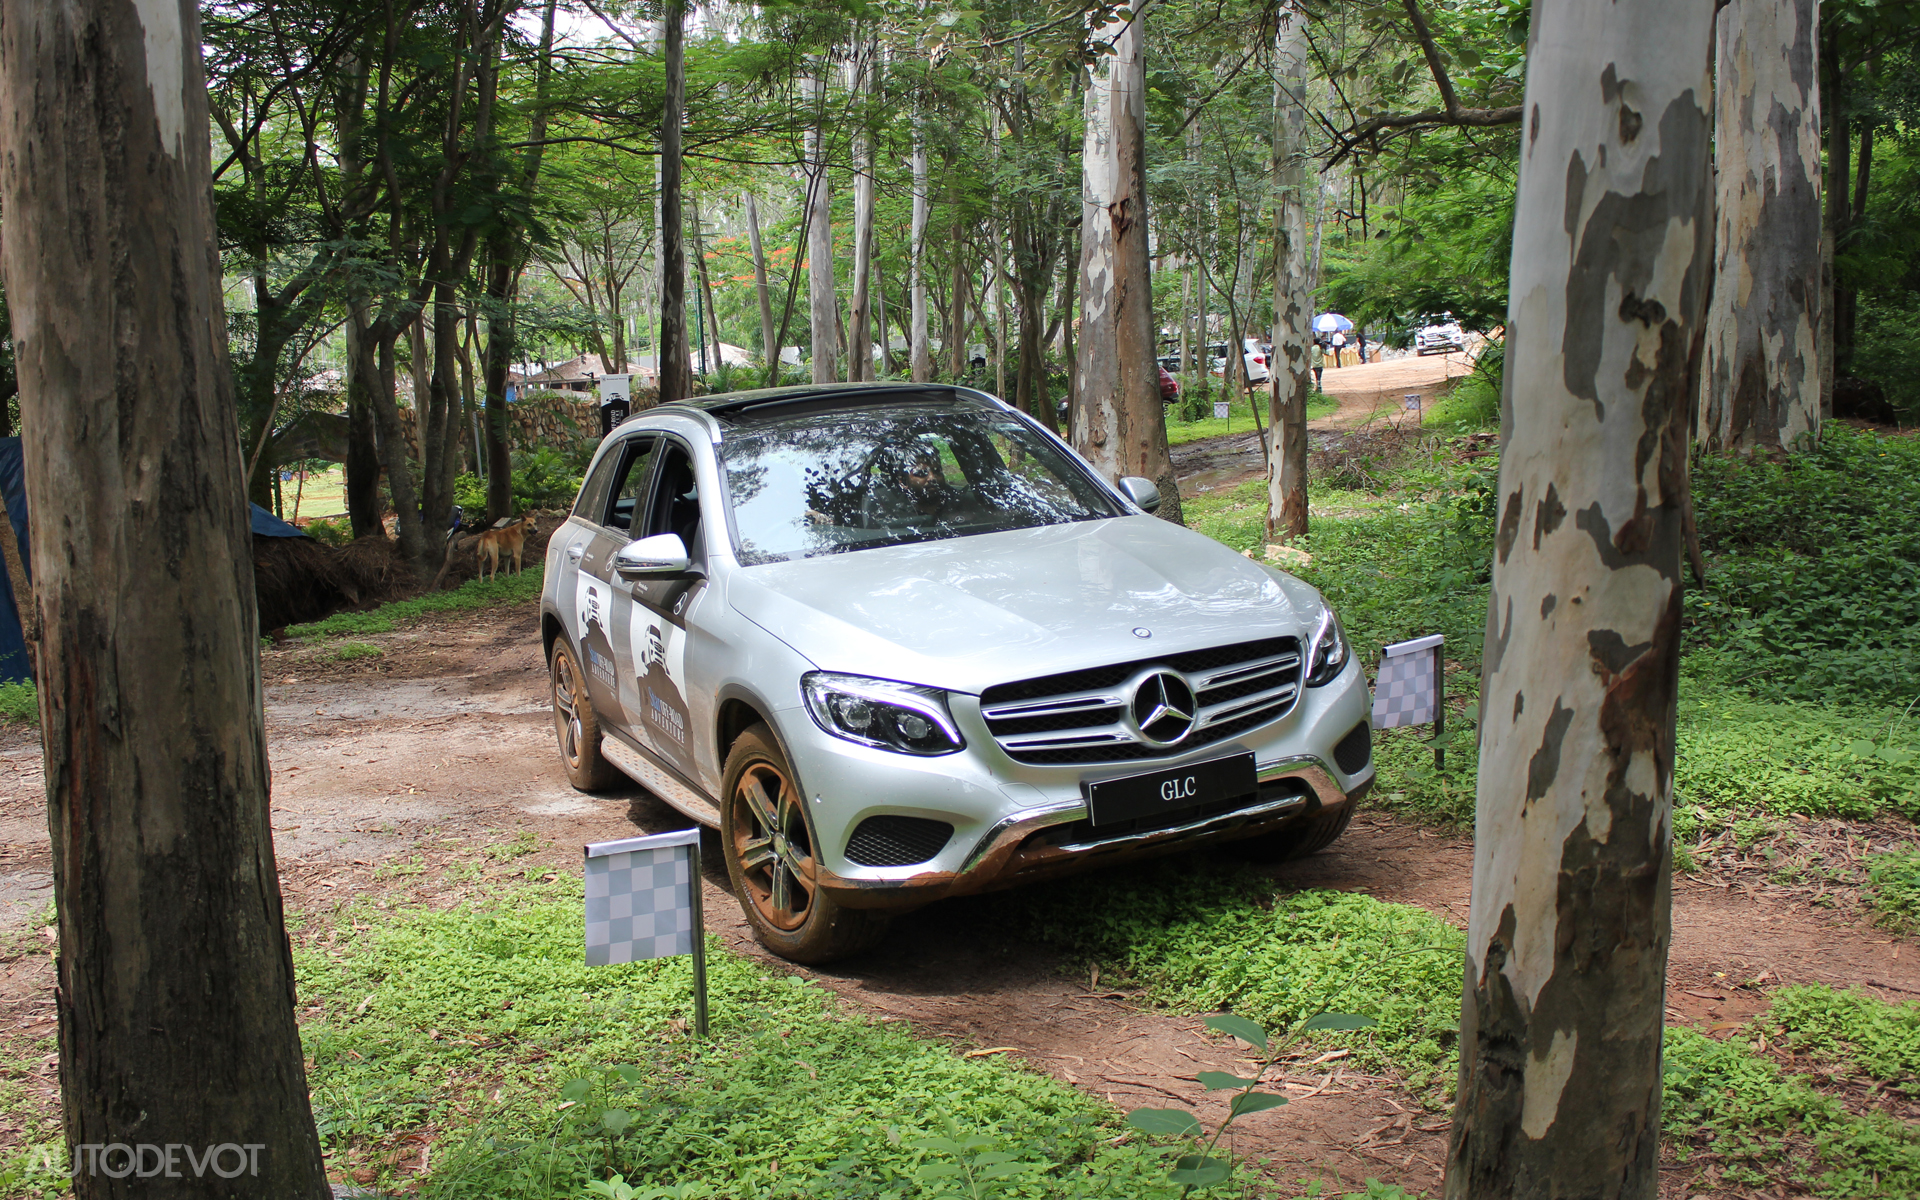 Mercedes-Benz GLC off-road